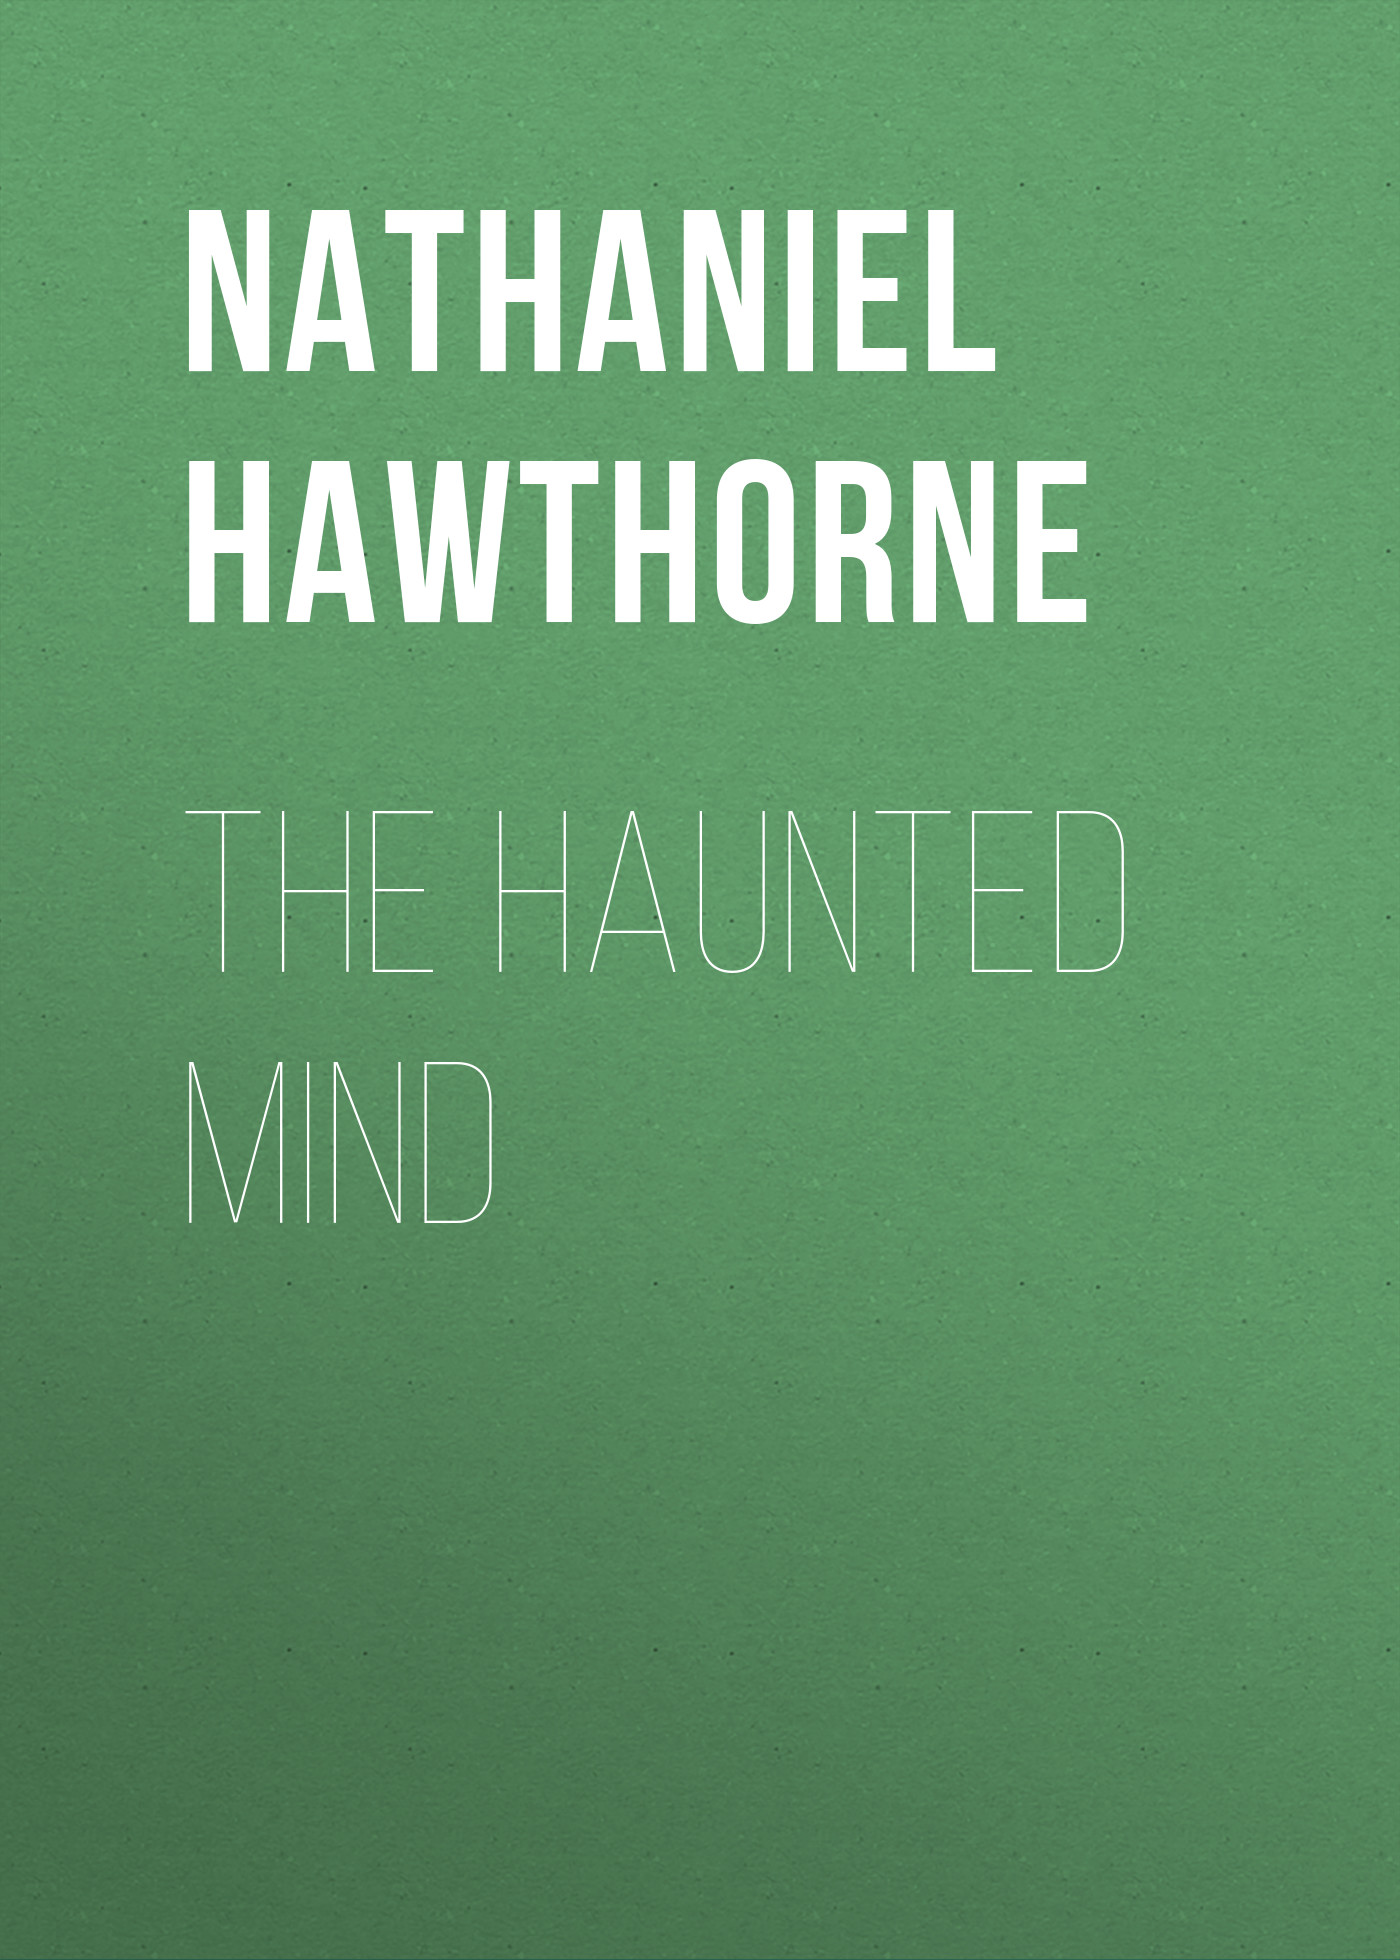 Книга The Haunted Mind из серии , созданная Nathaniel Hawthorne, написана в жанре Историческая фантастика, Исторические приключения. Стоимость электронной книги The Haunted Mind с идентификатором 34841662 составляет 0 руб.